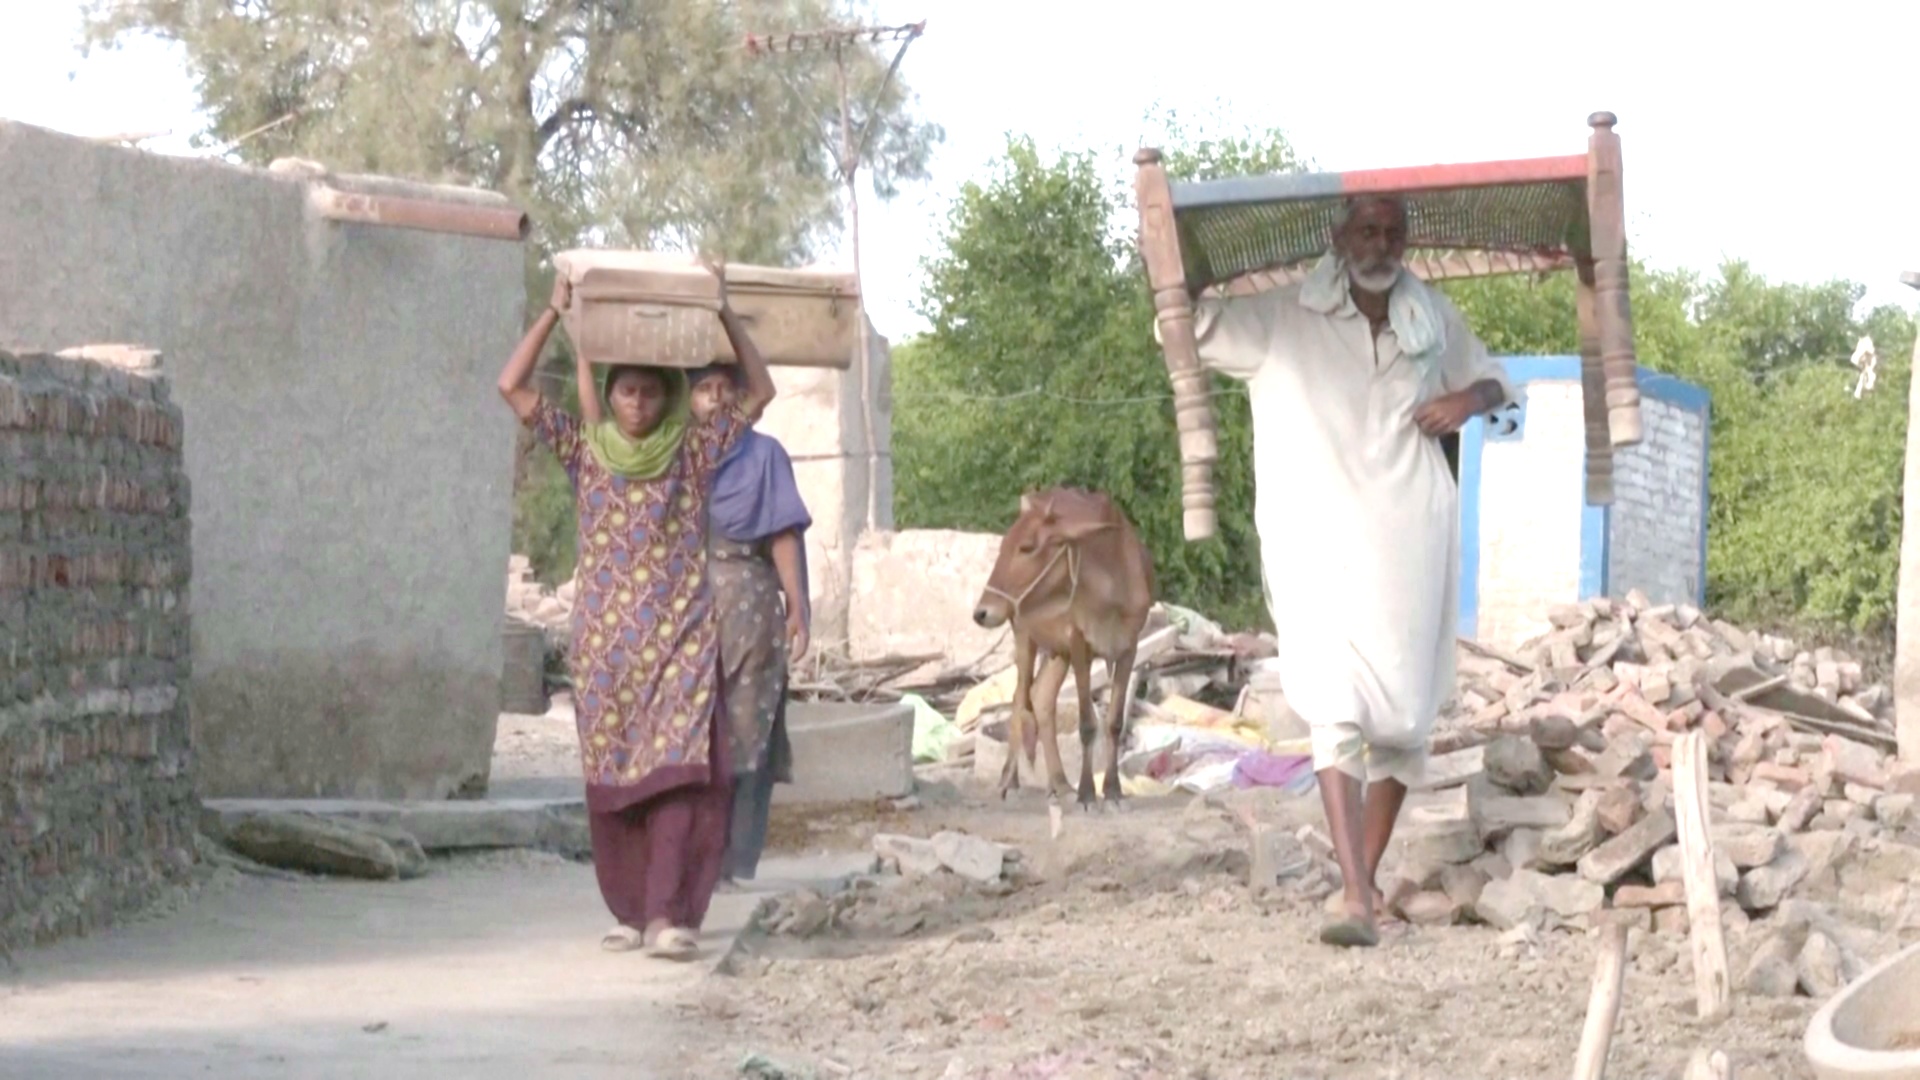 Вернуться на руины: что ждёт пакистанцев после наводнений